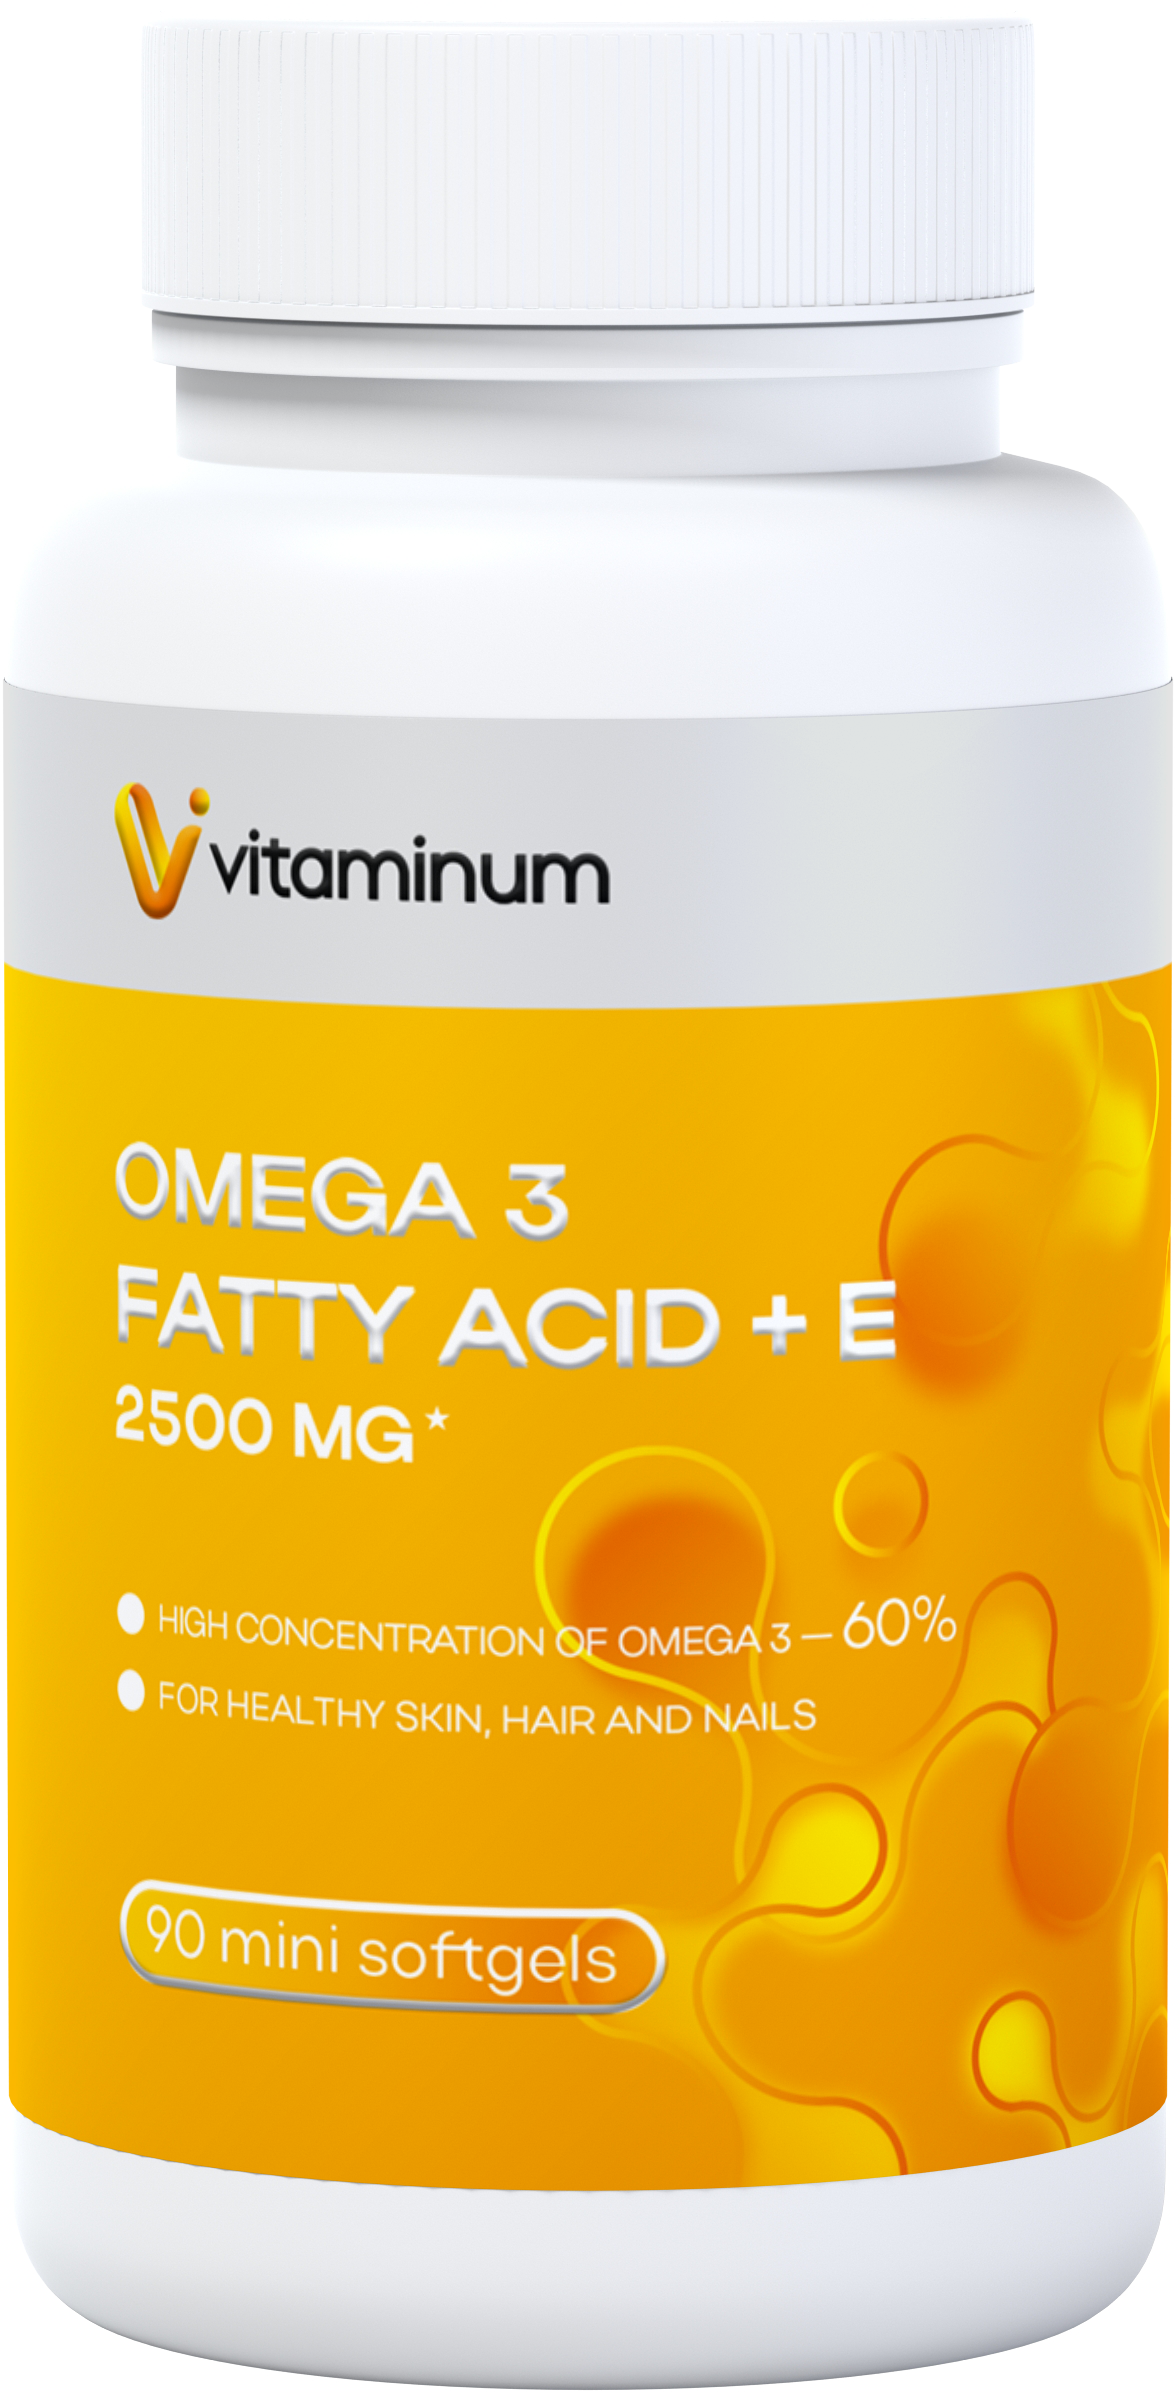  Vitaminum ОМЕГА 3 60% + витамин Е (2500 MG*) 90 капсул 700 мг   в Полевское